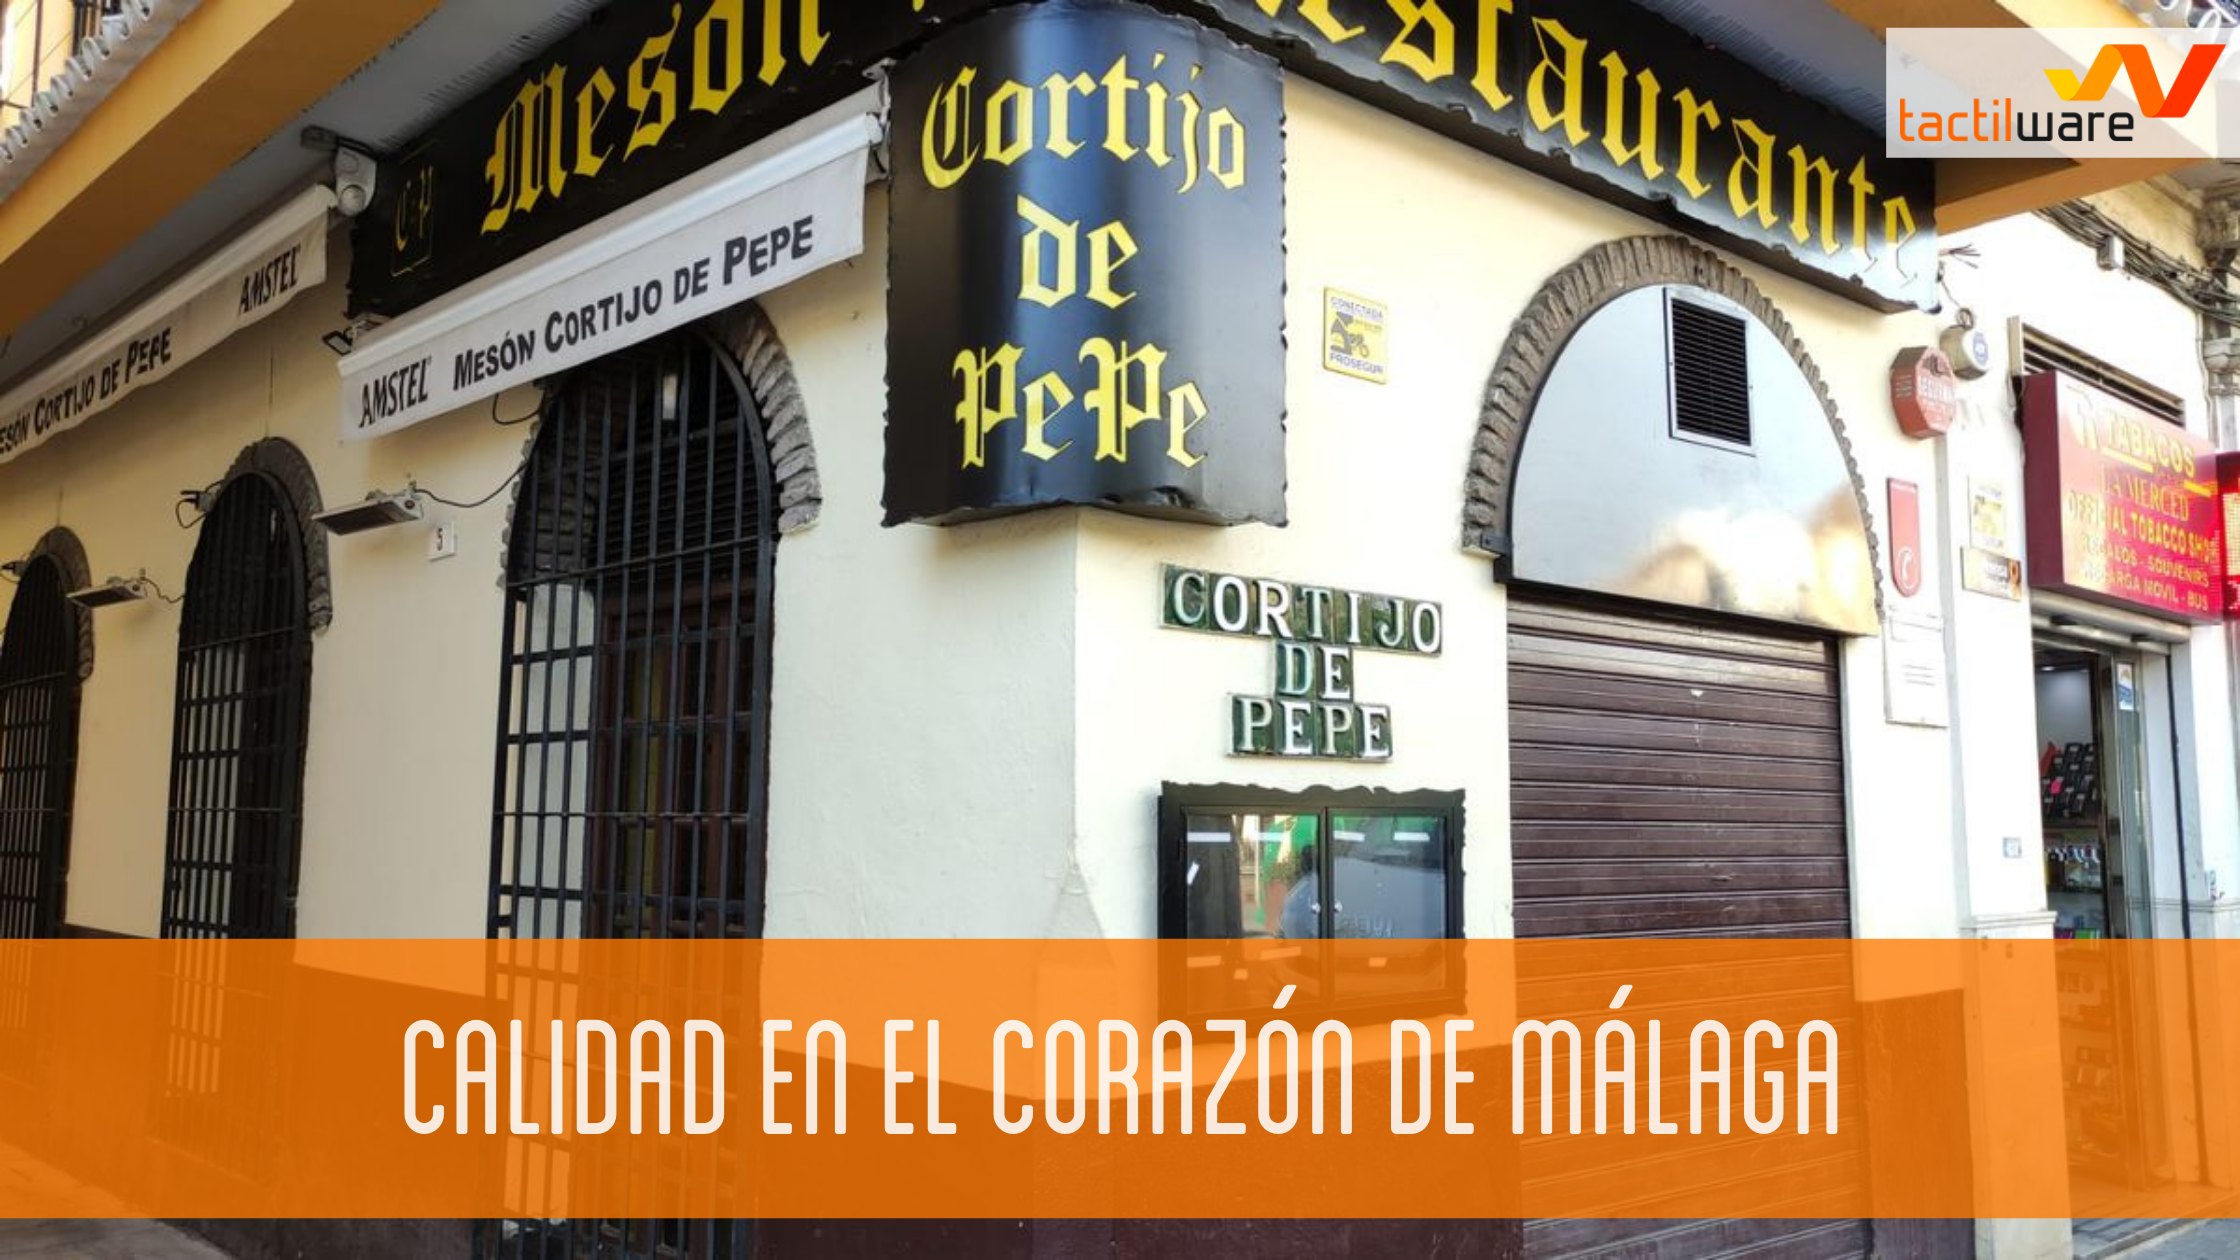 El Cortijo de Pepe, servicio de calidad al alcance de todos en el corazón de Málaga